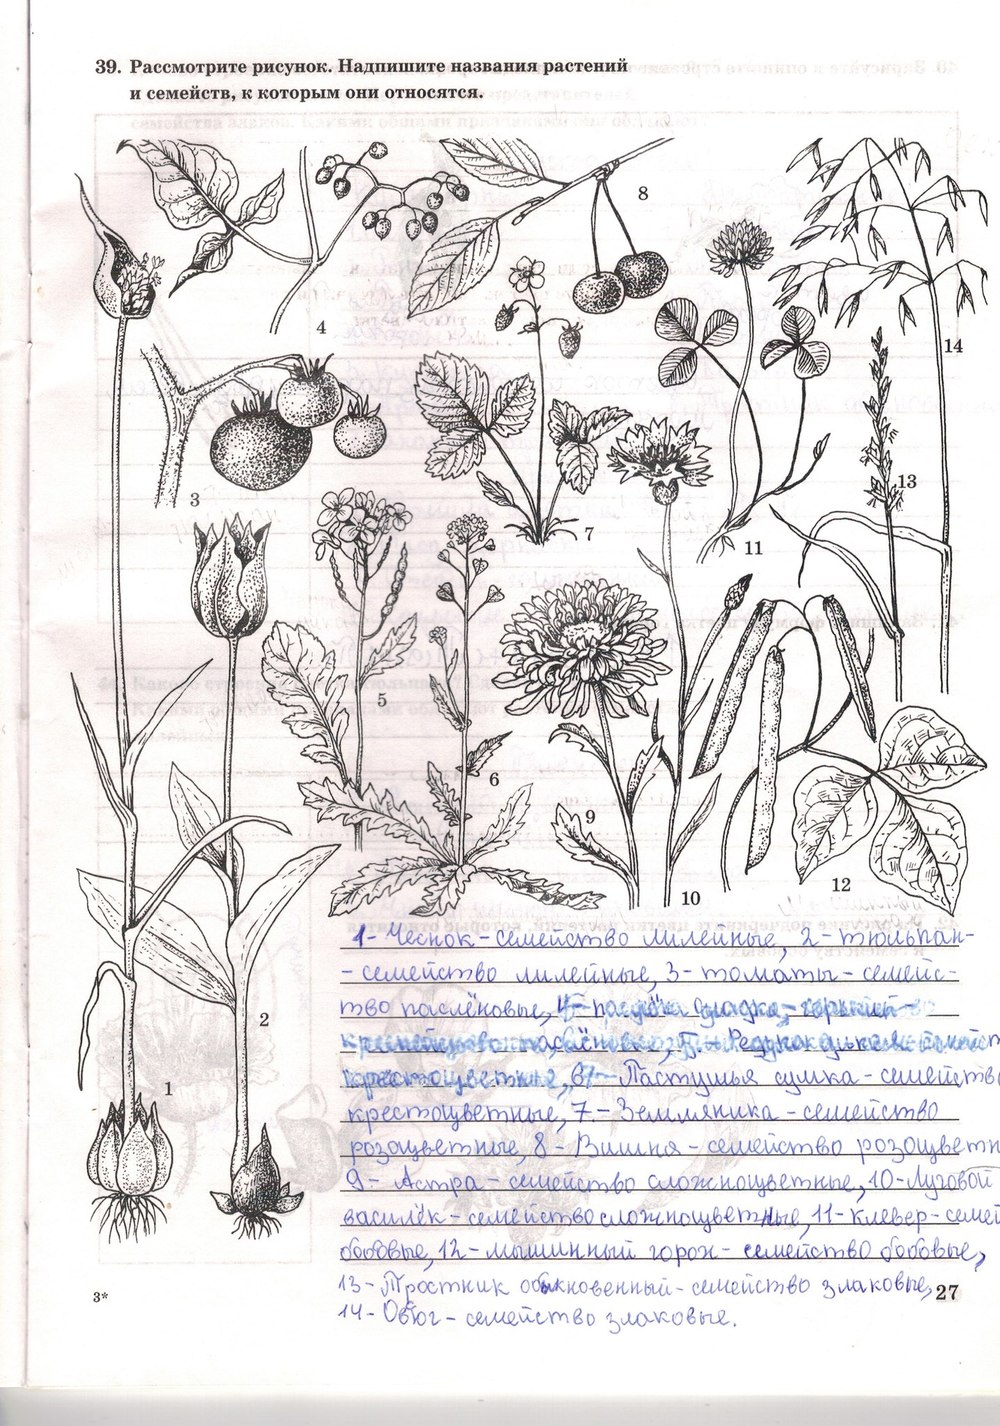 Впишите название растений на рисунке